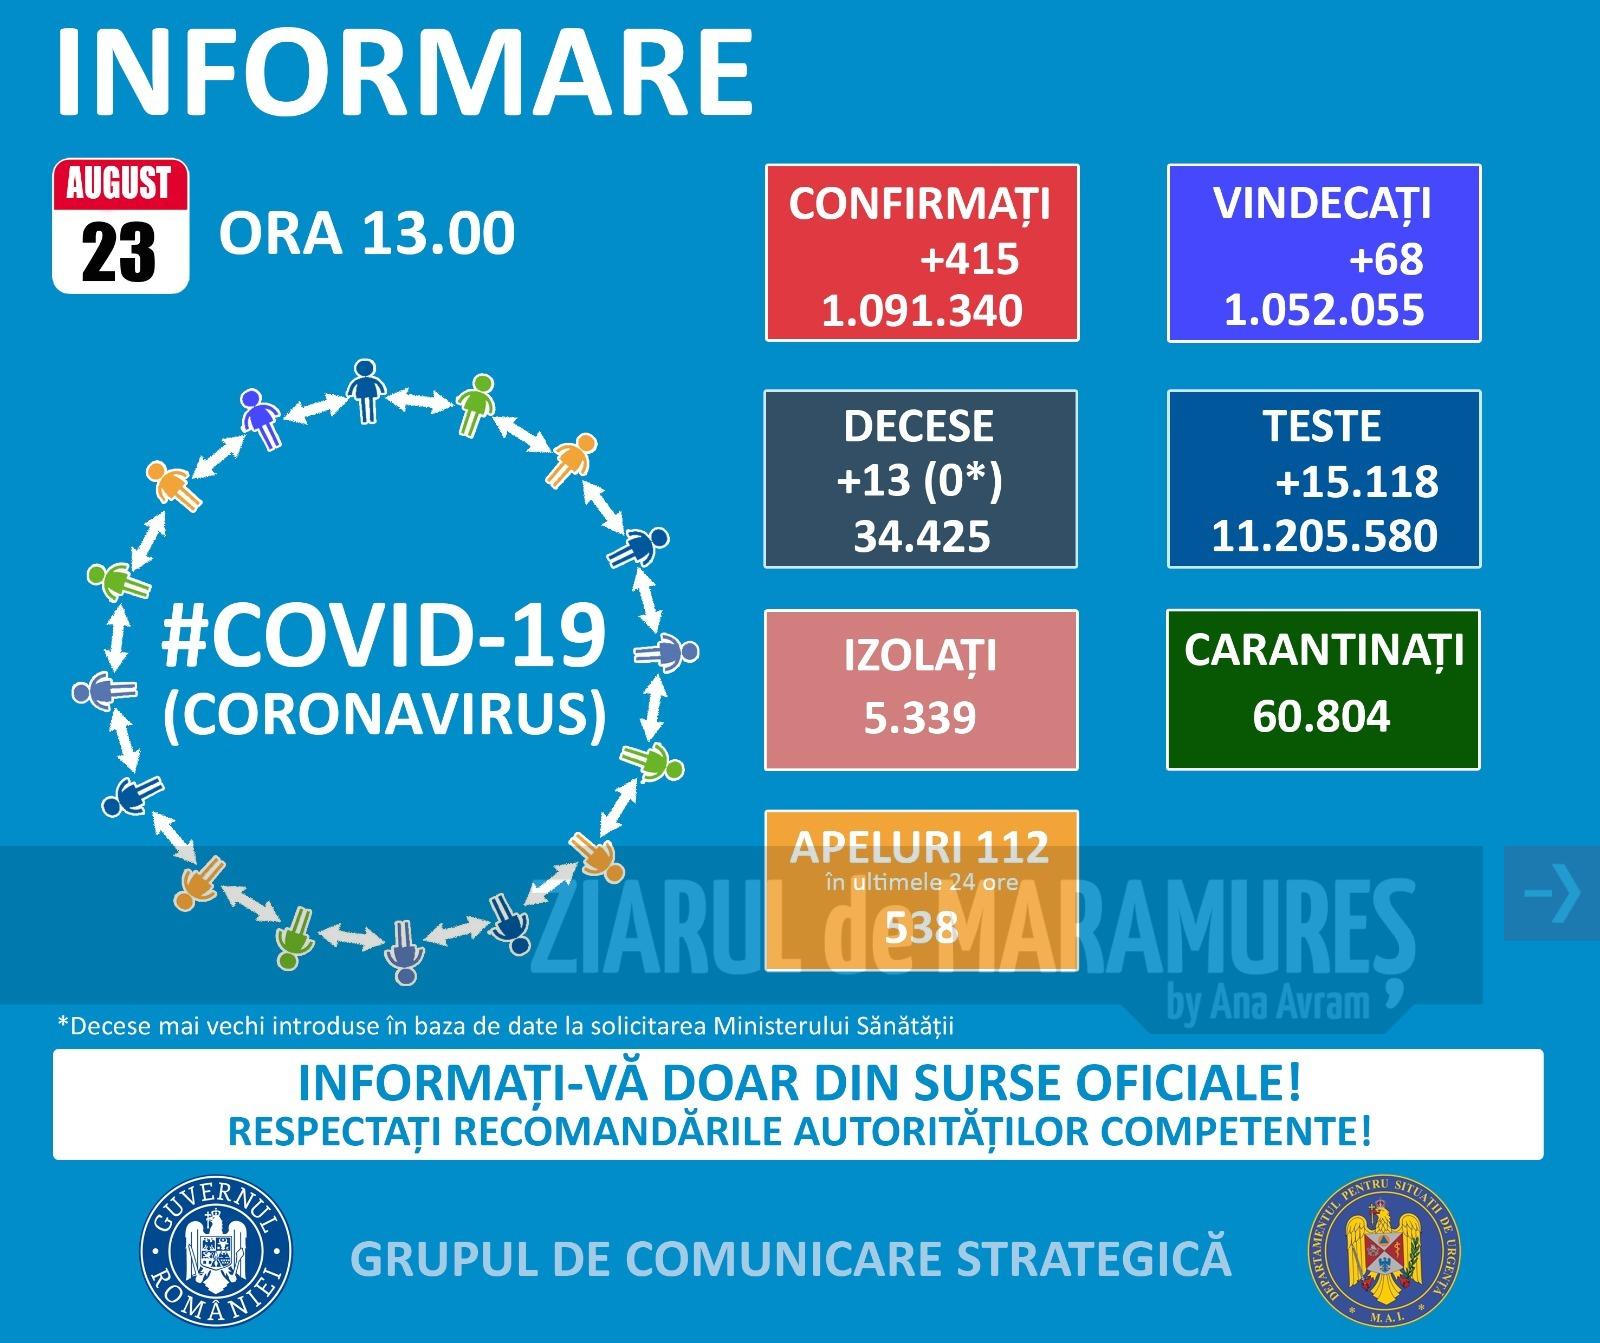 Două cazuri noi în Maramureș și 415 persoane confirmate pozitiv la nivel național în ultimele 24 de ore